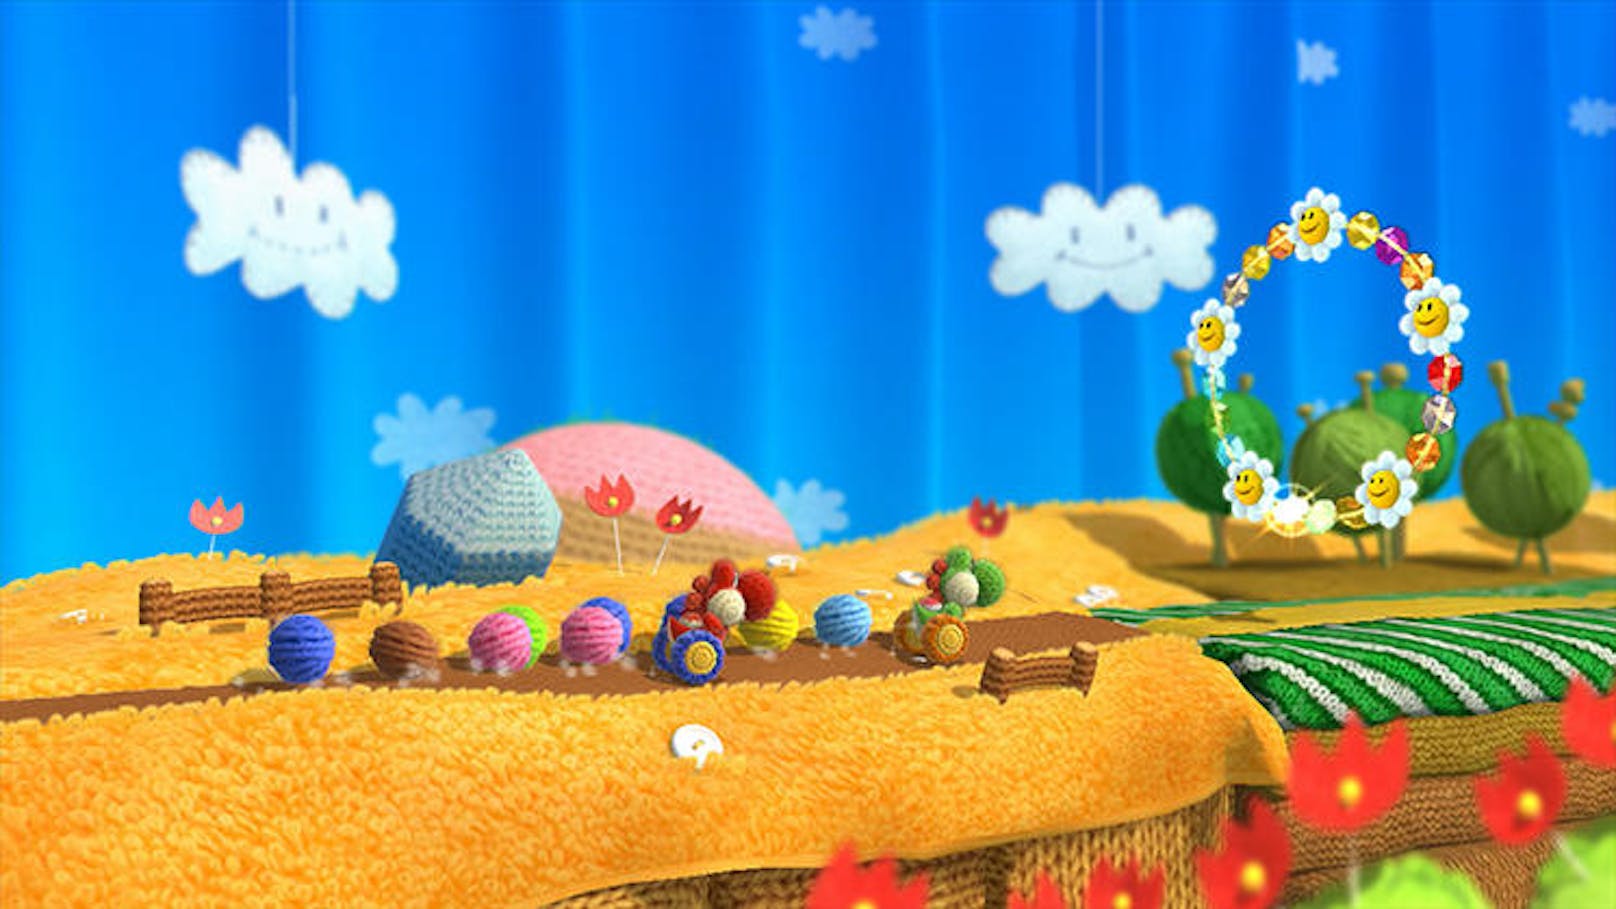 Und um die Frage im Titel zu beantworten: Ja, Yoshi's Wooly World ist ein Game, das mit den Super-Mario-Titeln mithalten kann und sie in punkto Grafik und Gameplay (momentan) schlägt.